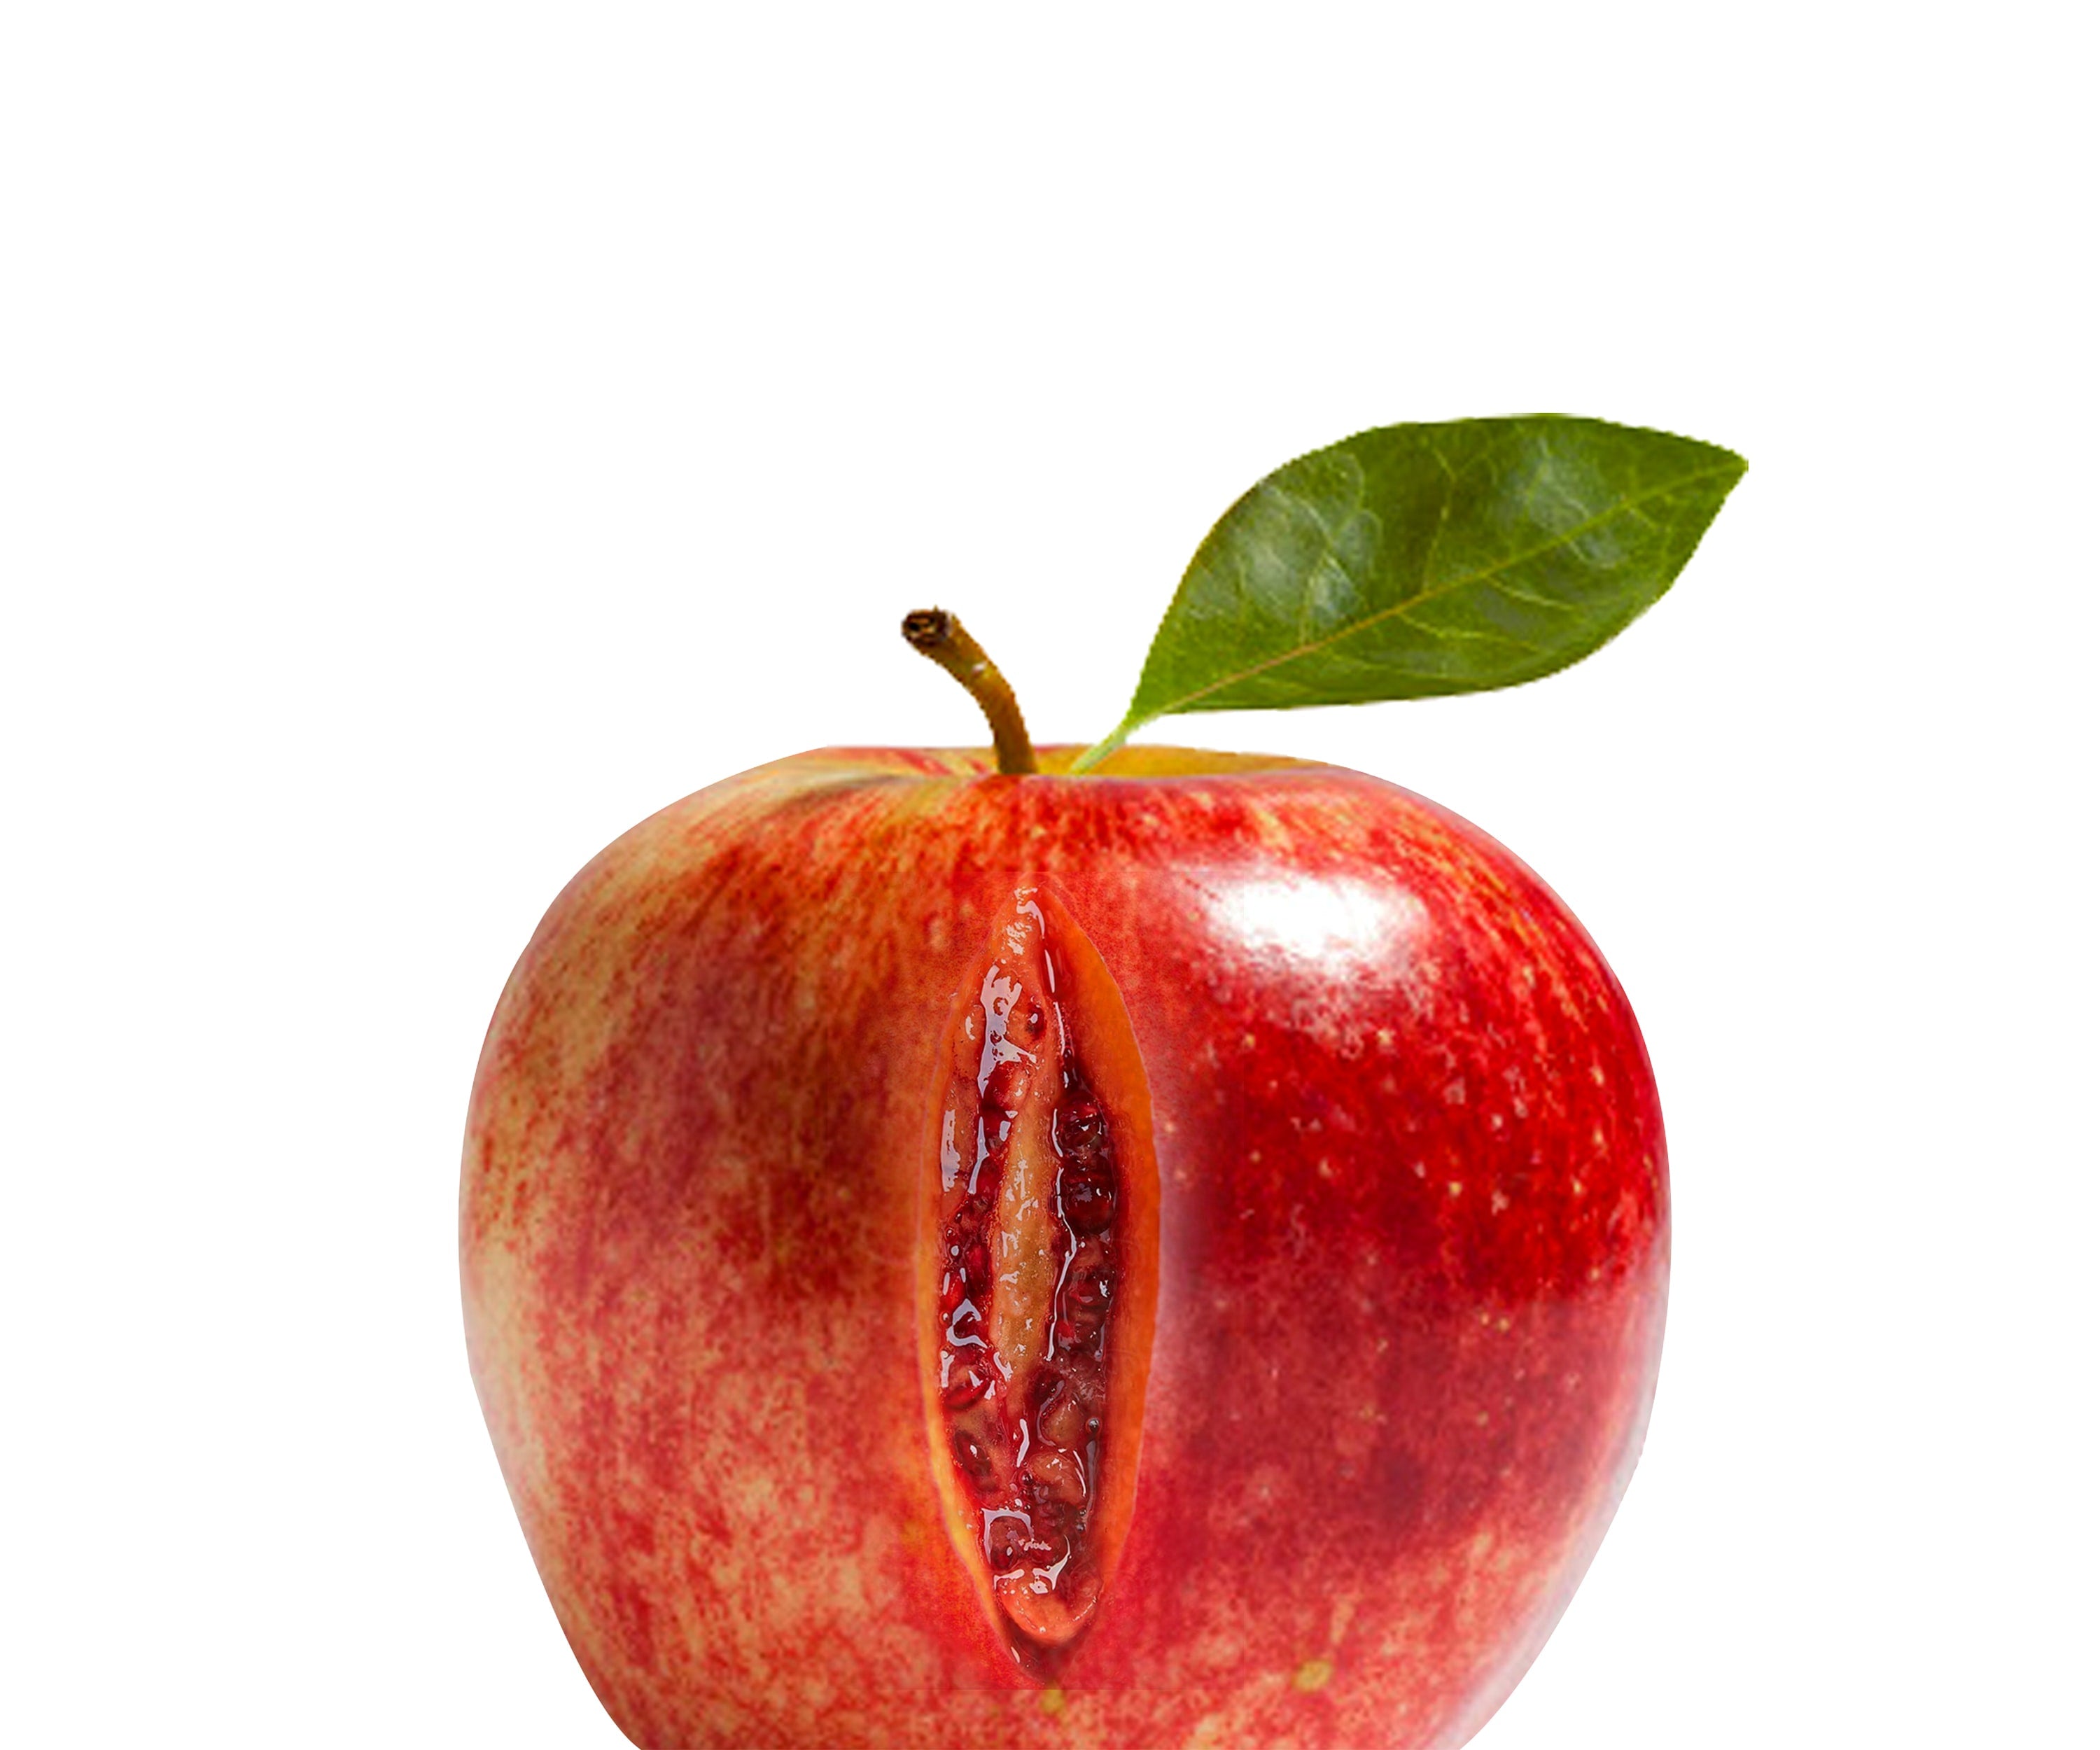 pomme avec une fente en forme de grenade, forme vulgaire